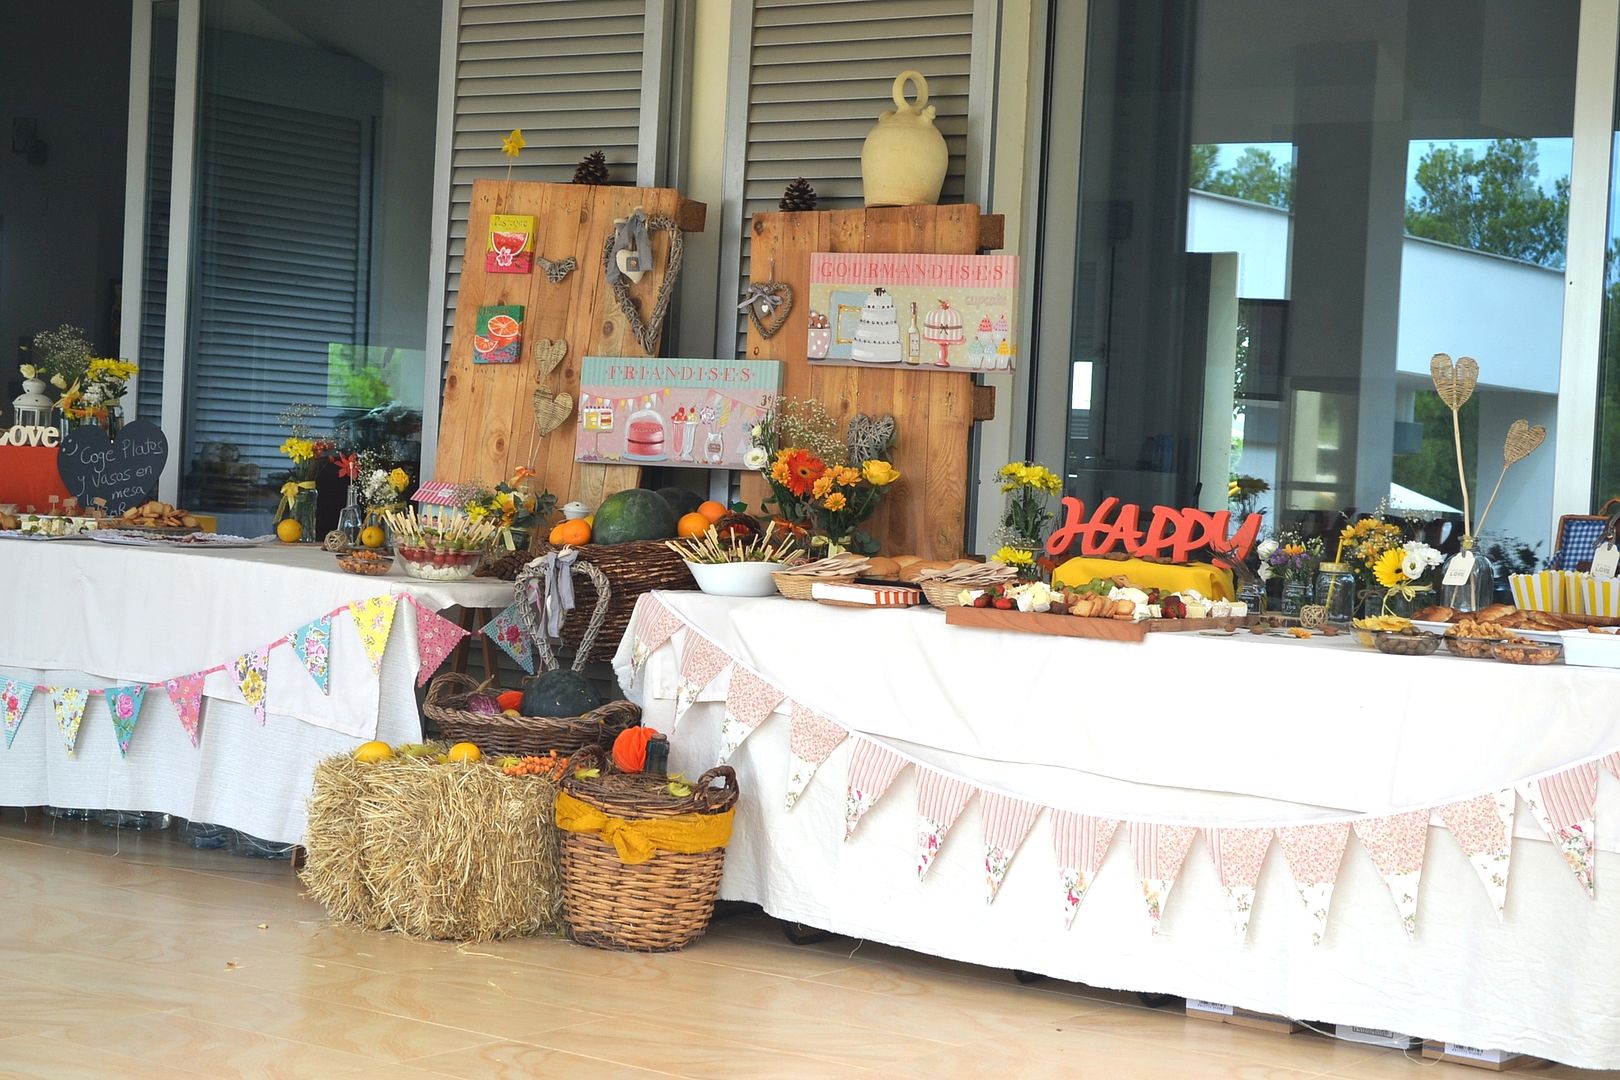  Mesa Bufé de comida en porche de casa para una boda campestre con letrero happy